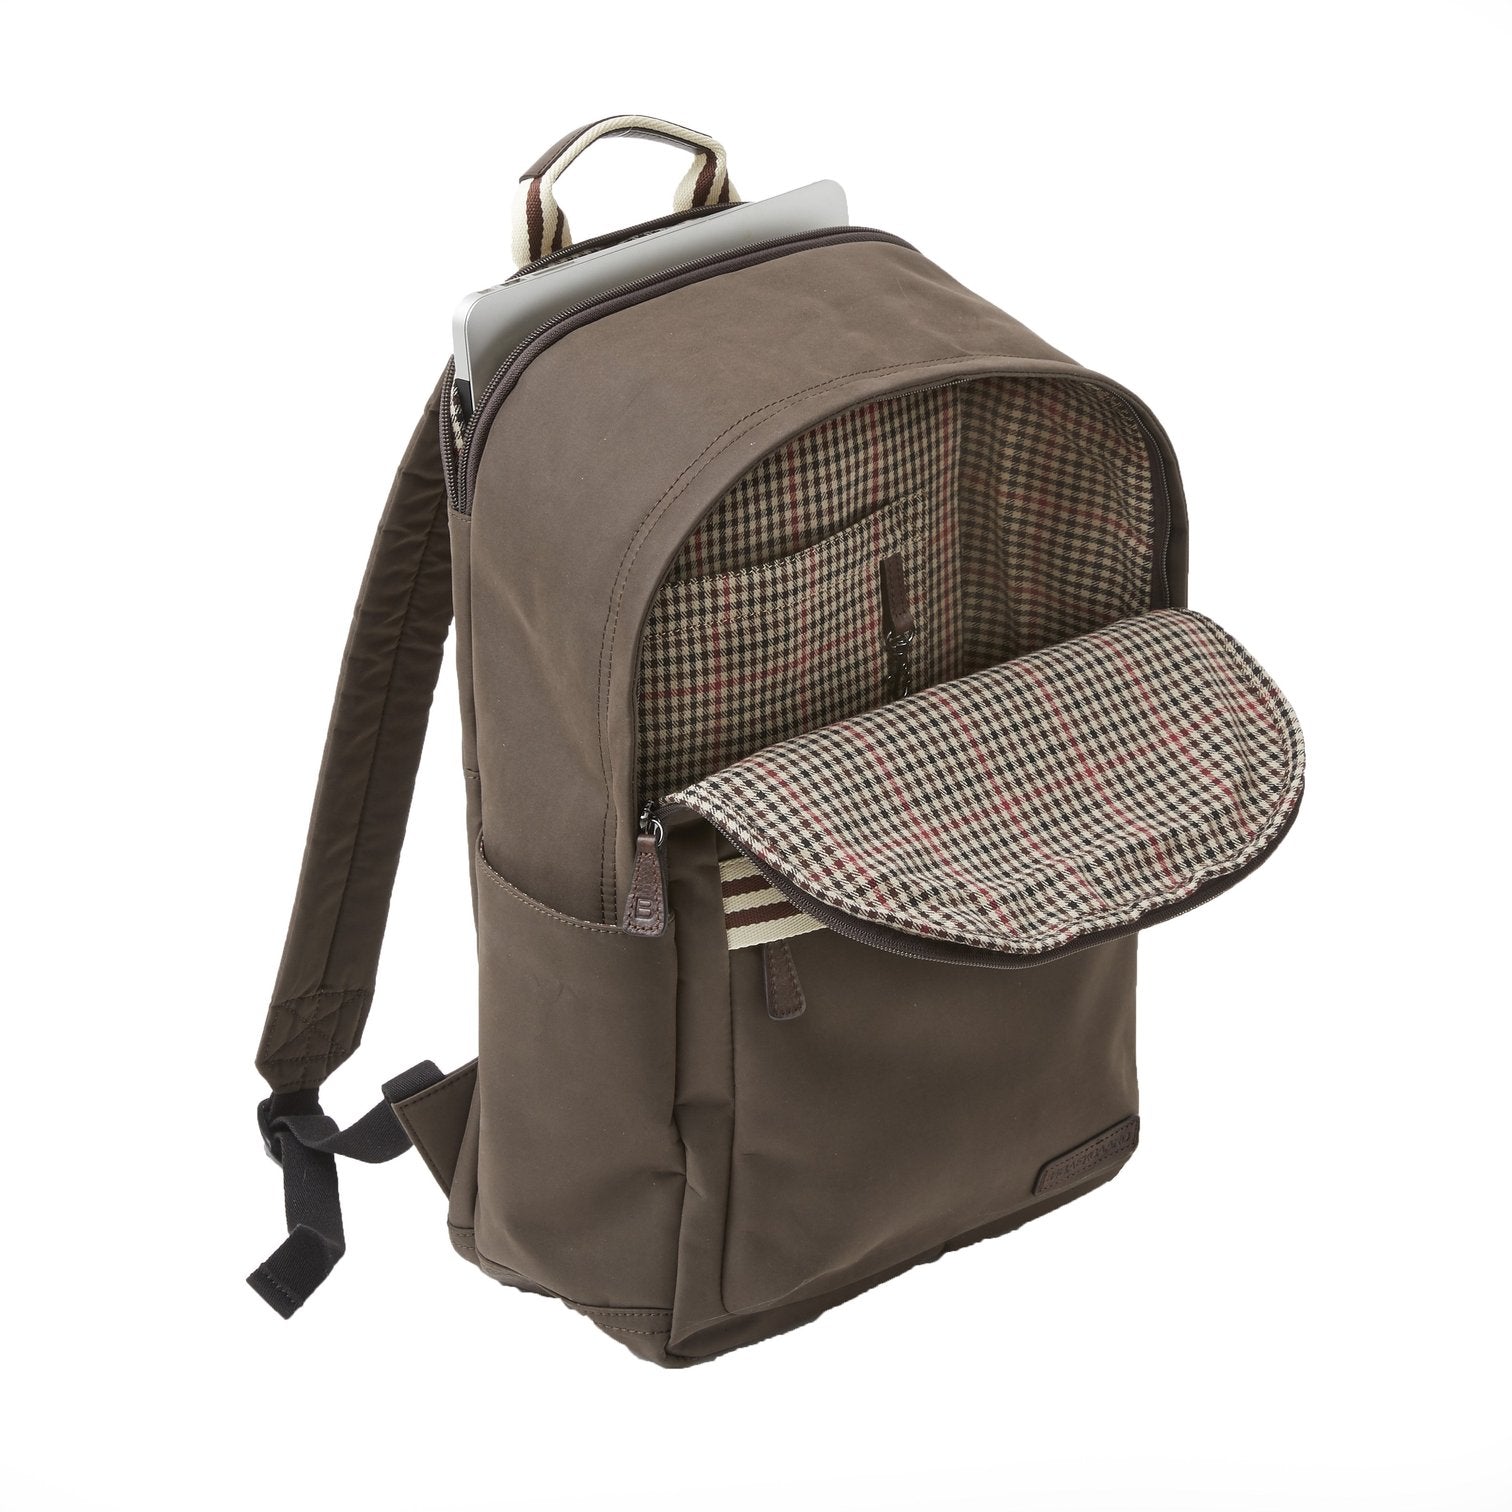 Teddy Zipper Backpack in Brown Brushed Microfiber by Baekgaard